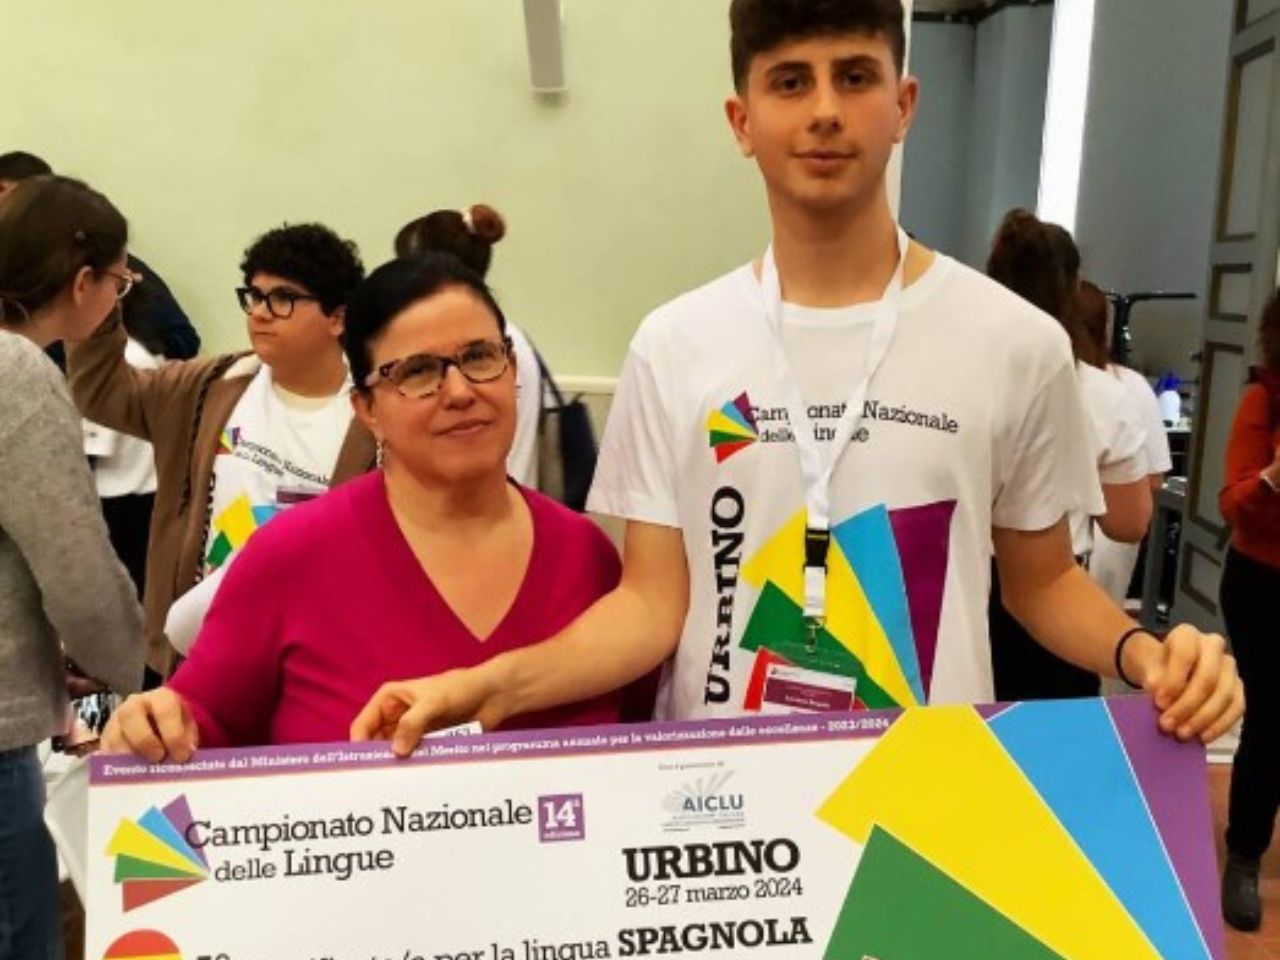 Dal Liceo “Da Vinci”, Lorenzo conquista il primo posto al Campionato Nazionale delle lingue